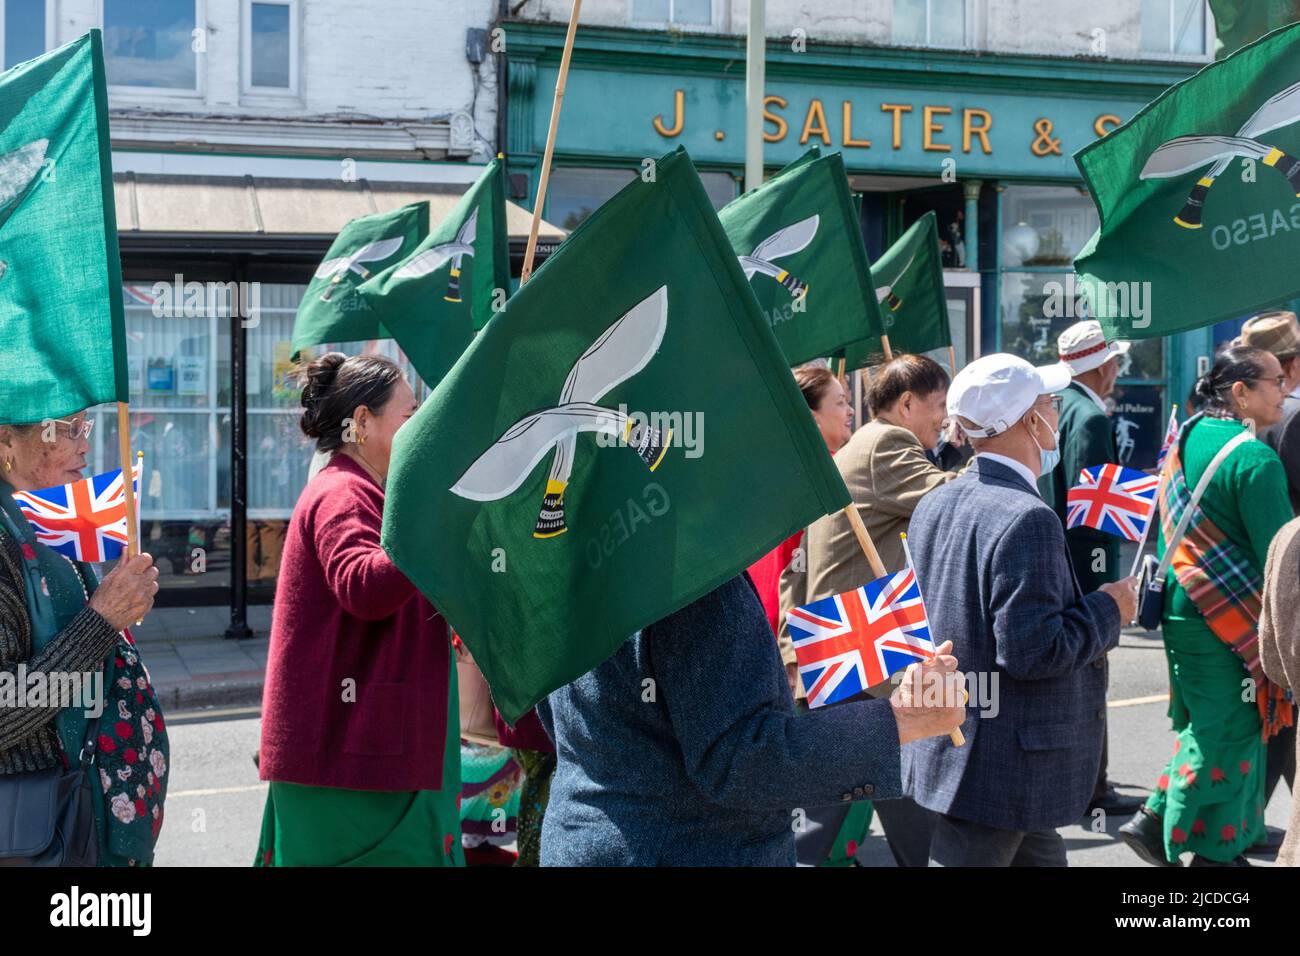 L'organisation d'ex-militaires de l'armée Gurkha (GAESO) s'est mise en marche dans le Grand Parade à la fête de Victoria, un événement annuel à Aldershot, Hampshire, Angleterre, Royaume-Uni Banque D'Images